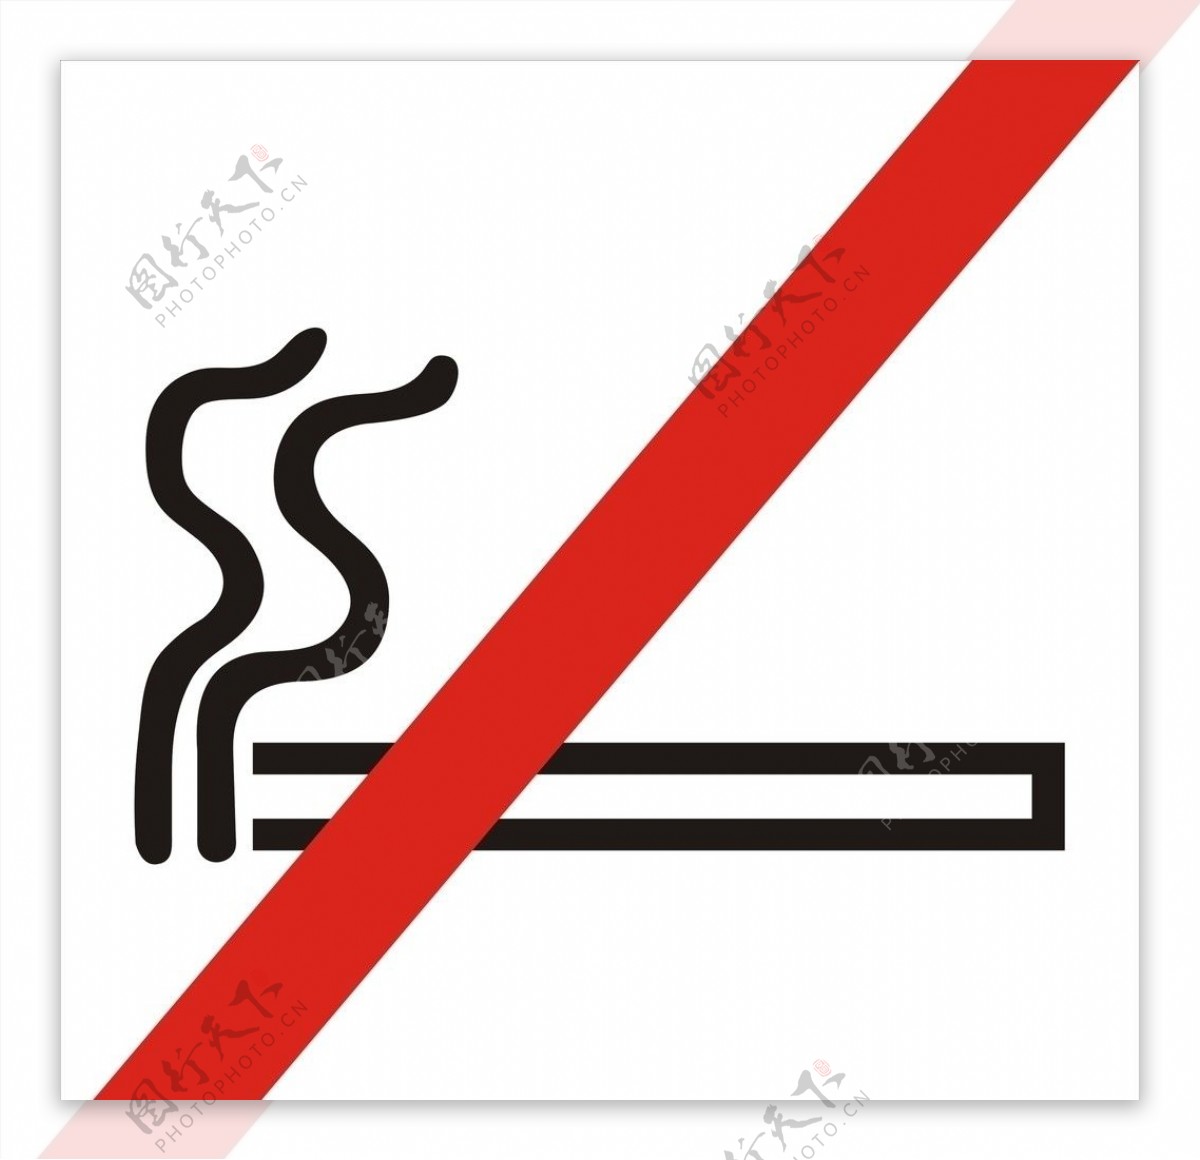 严禁止吸烟标志图片